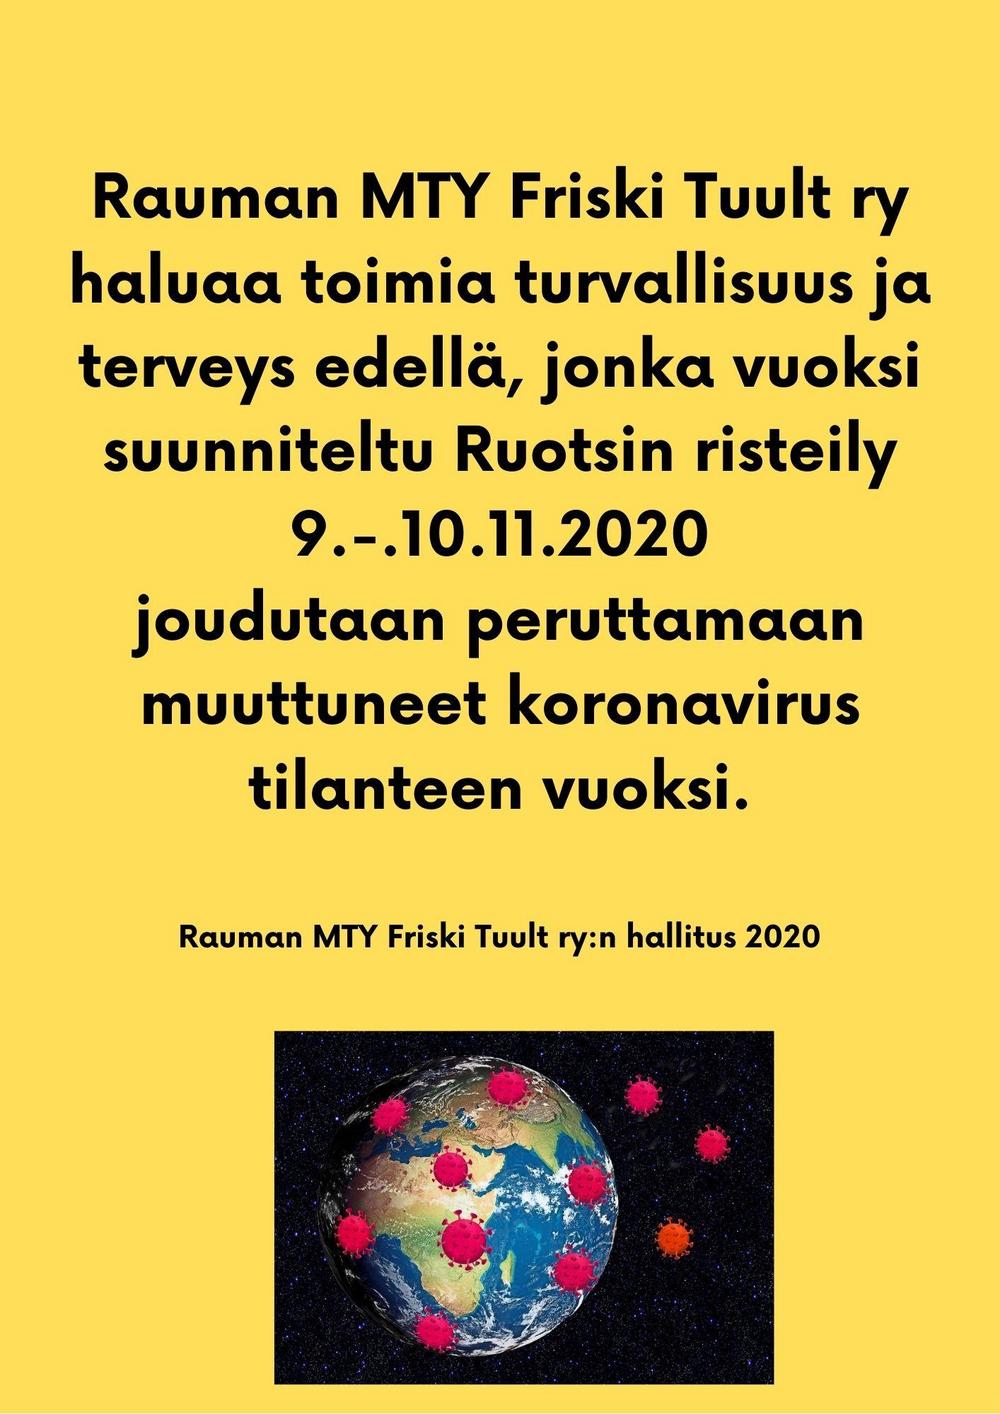 Rauman MTY Friski Tuult ry haluaa toimia turvallisuus ja
terveys edellä, jonka vuoksi suunniteltu Ruotsin risteily 9.-.10.11.2020
joudutaan peruttamaan muuttuneet koronavirus tilanteen vuoksi.
 
Rauman MTY Friski Tuult ry:n hallitus 2020